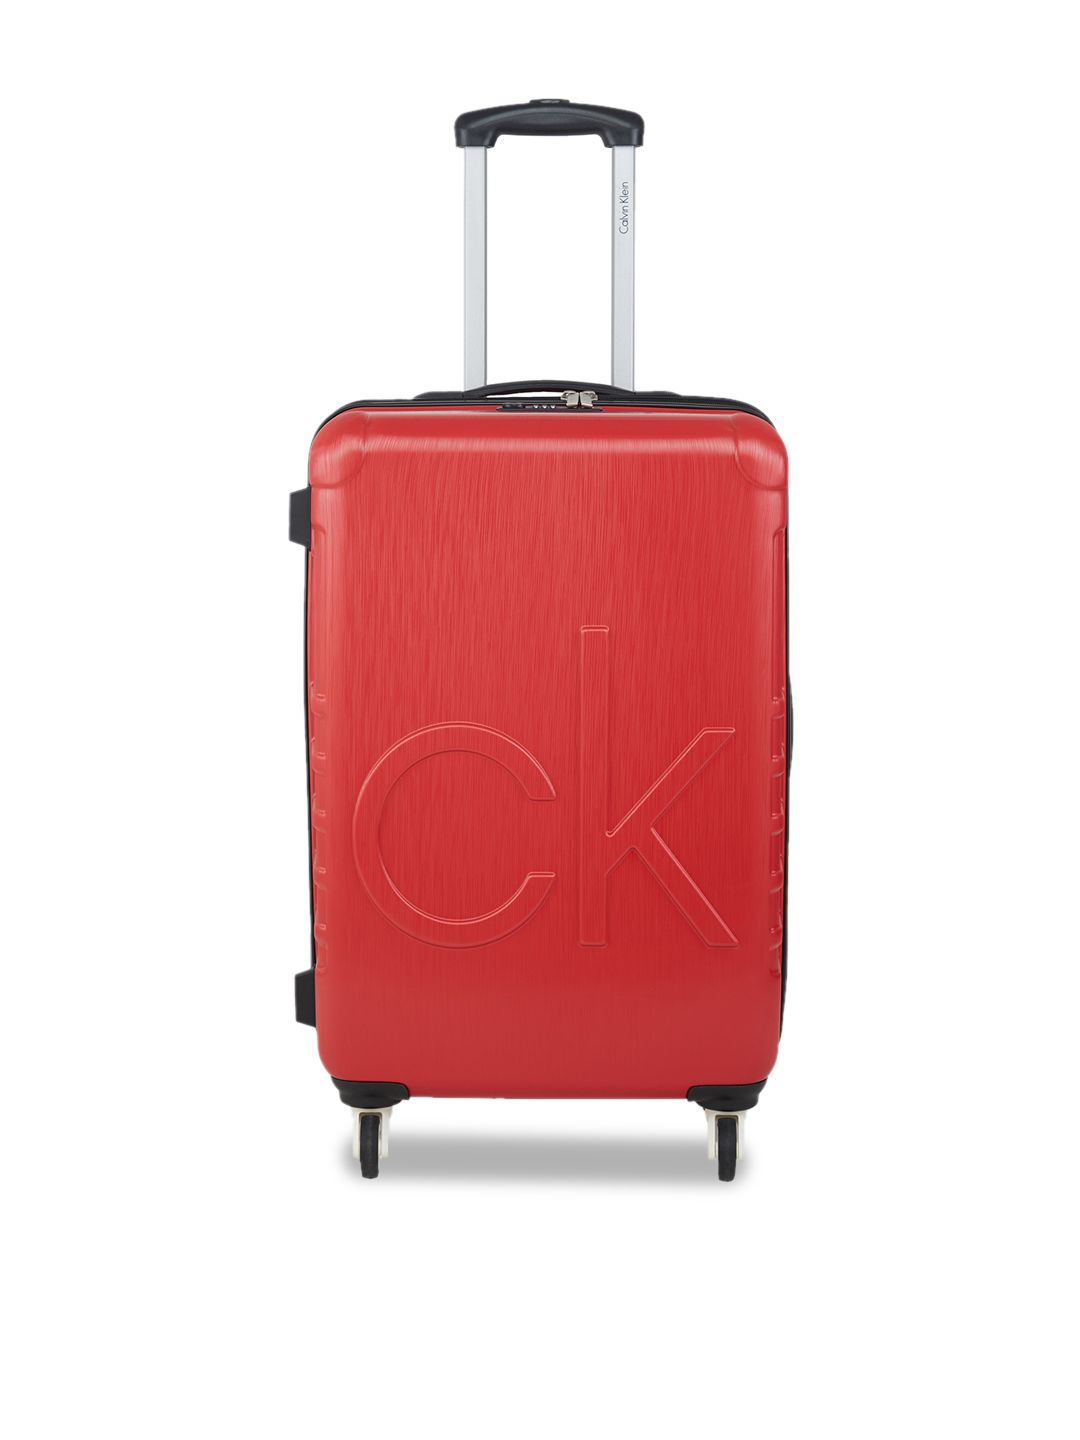 Calvin Klein Ck Logo Range Red & White Hard Medium Suitcase Price in India